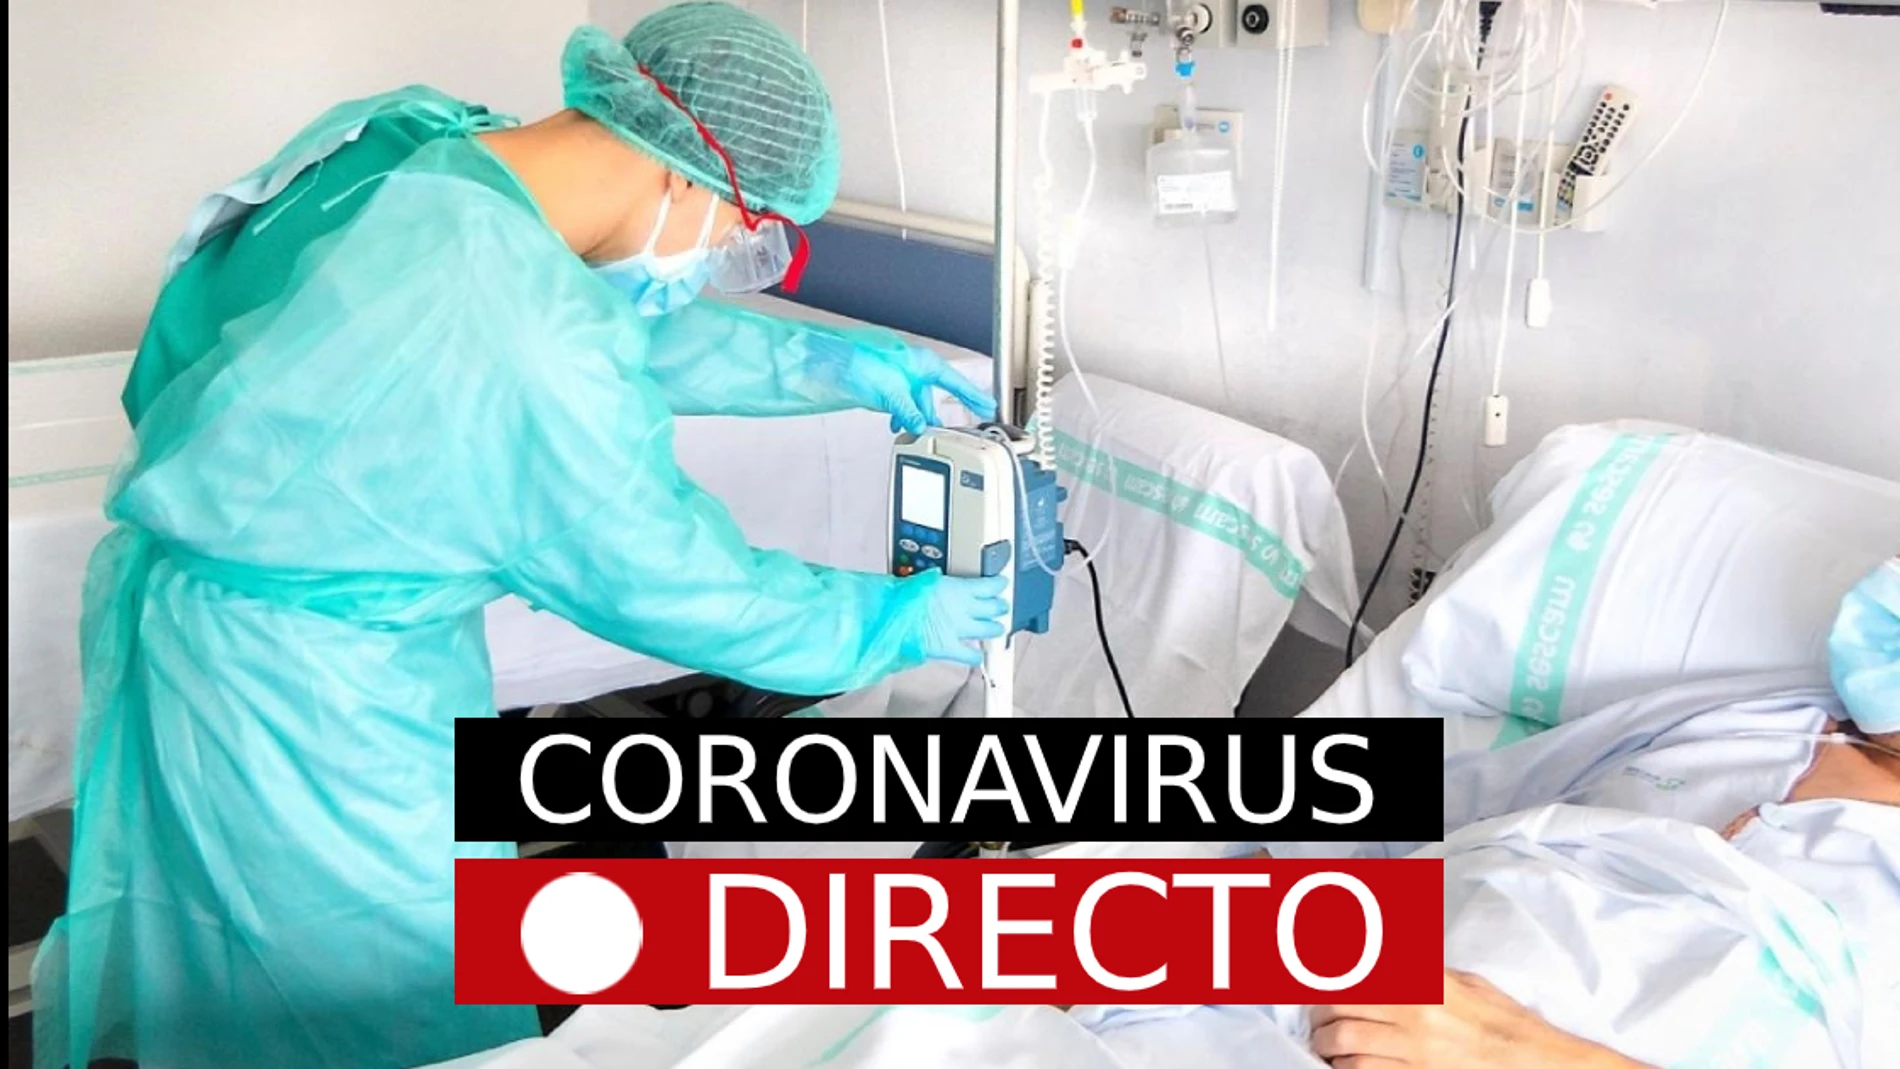 Última hora y novedades del coronavirus en España, pasaporte COVID, la variante Delta y la vacuna, hoy